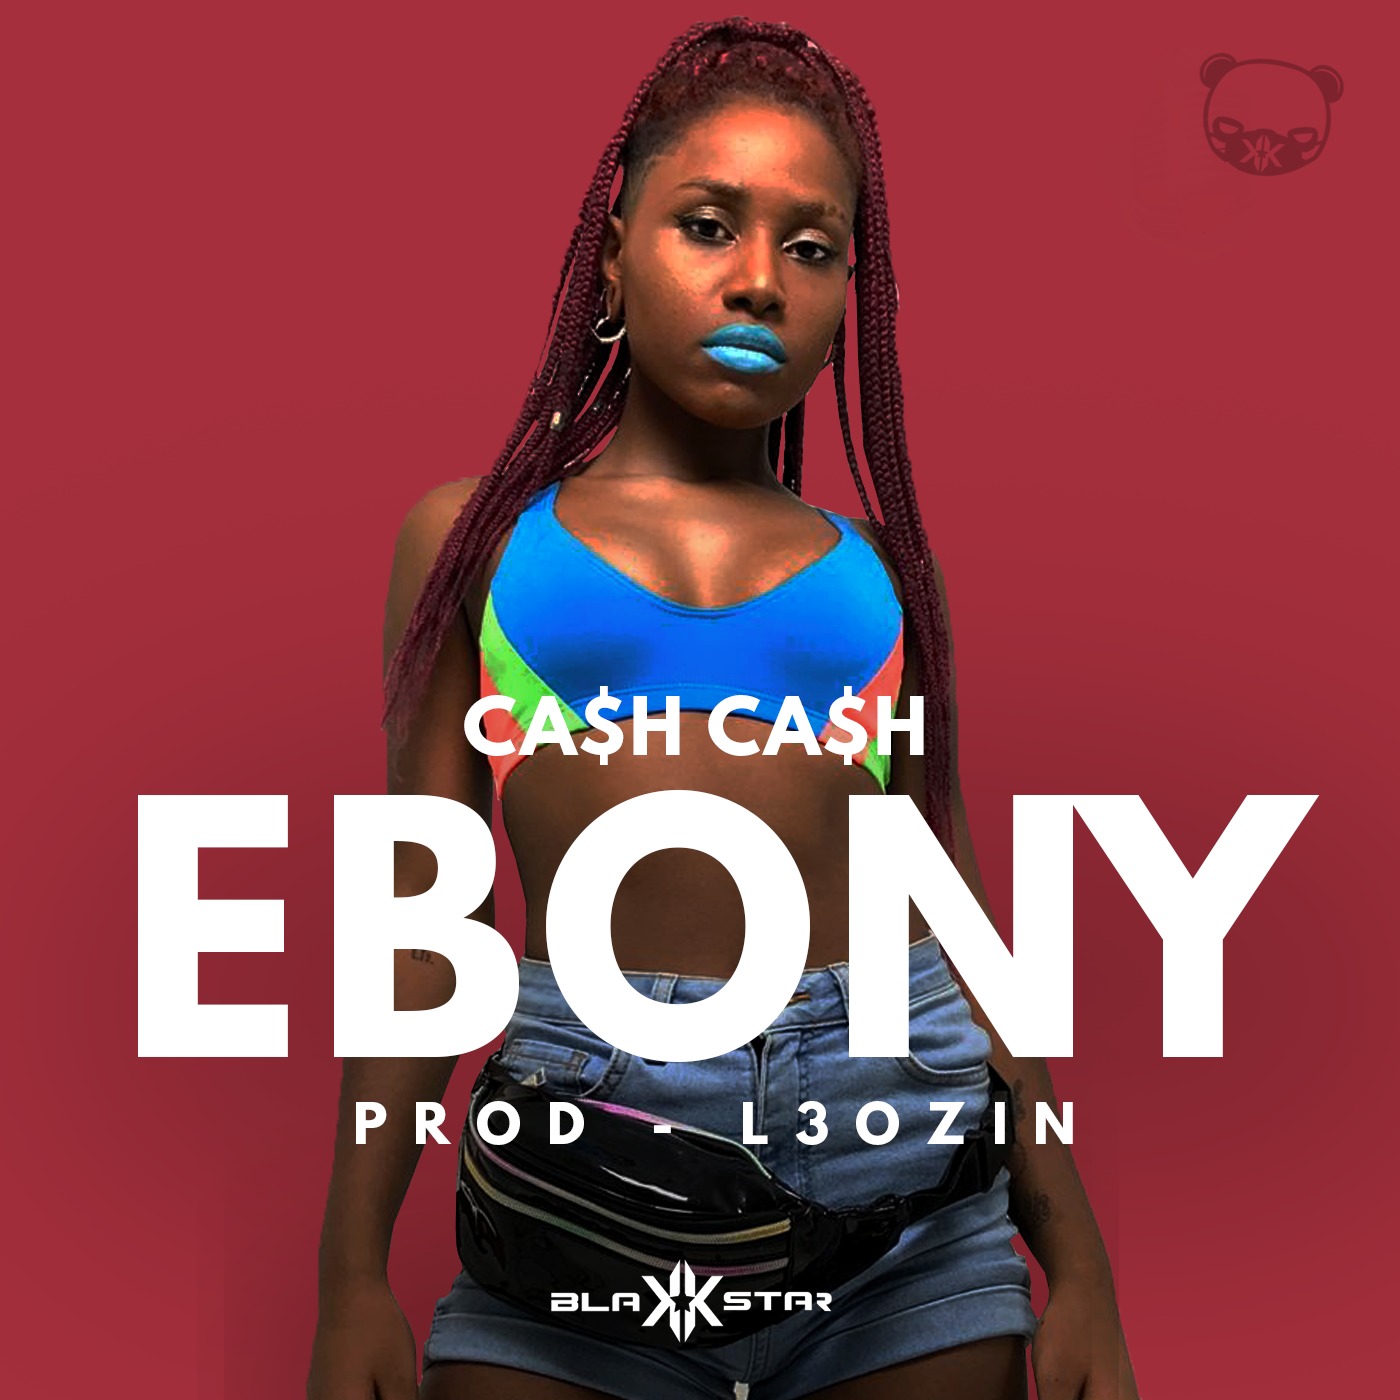 Ebony songs download